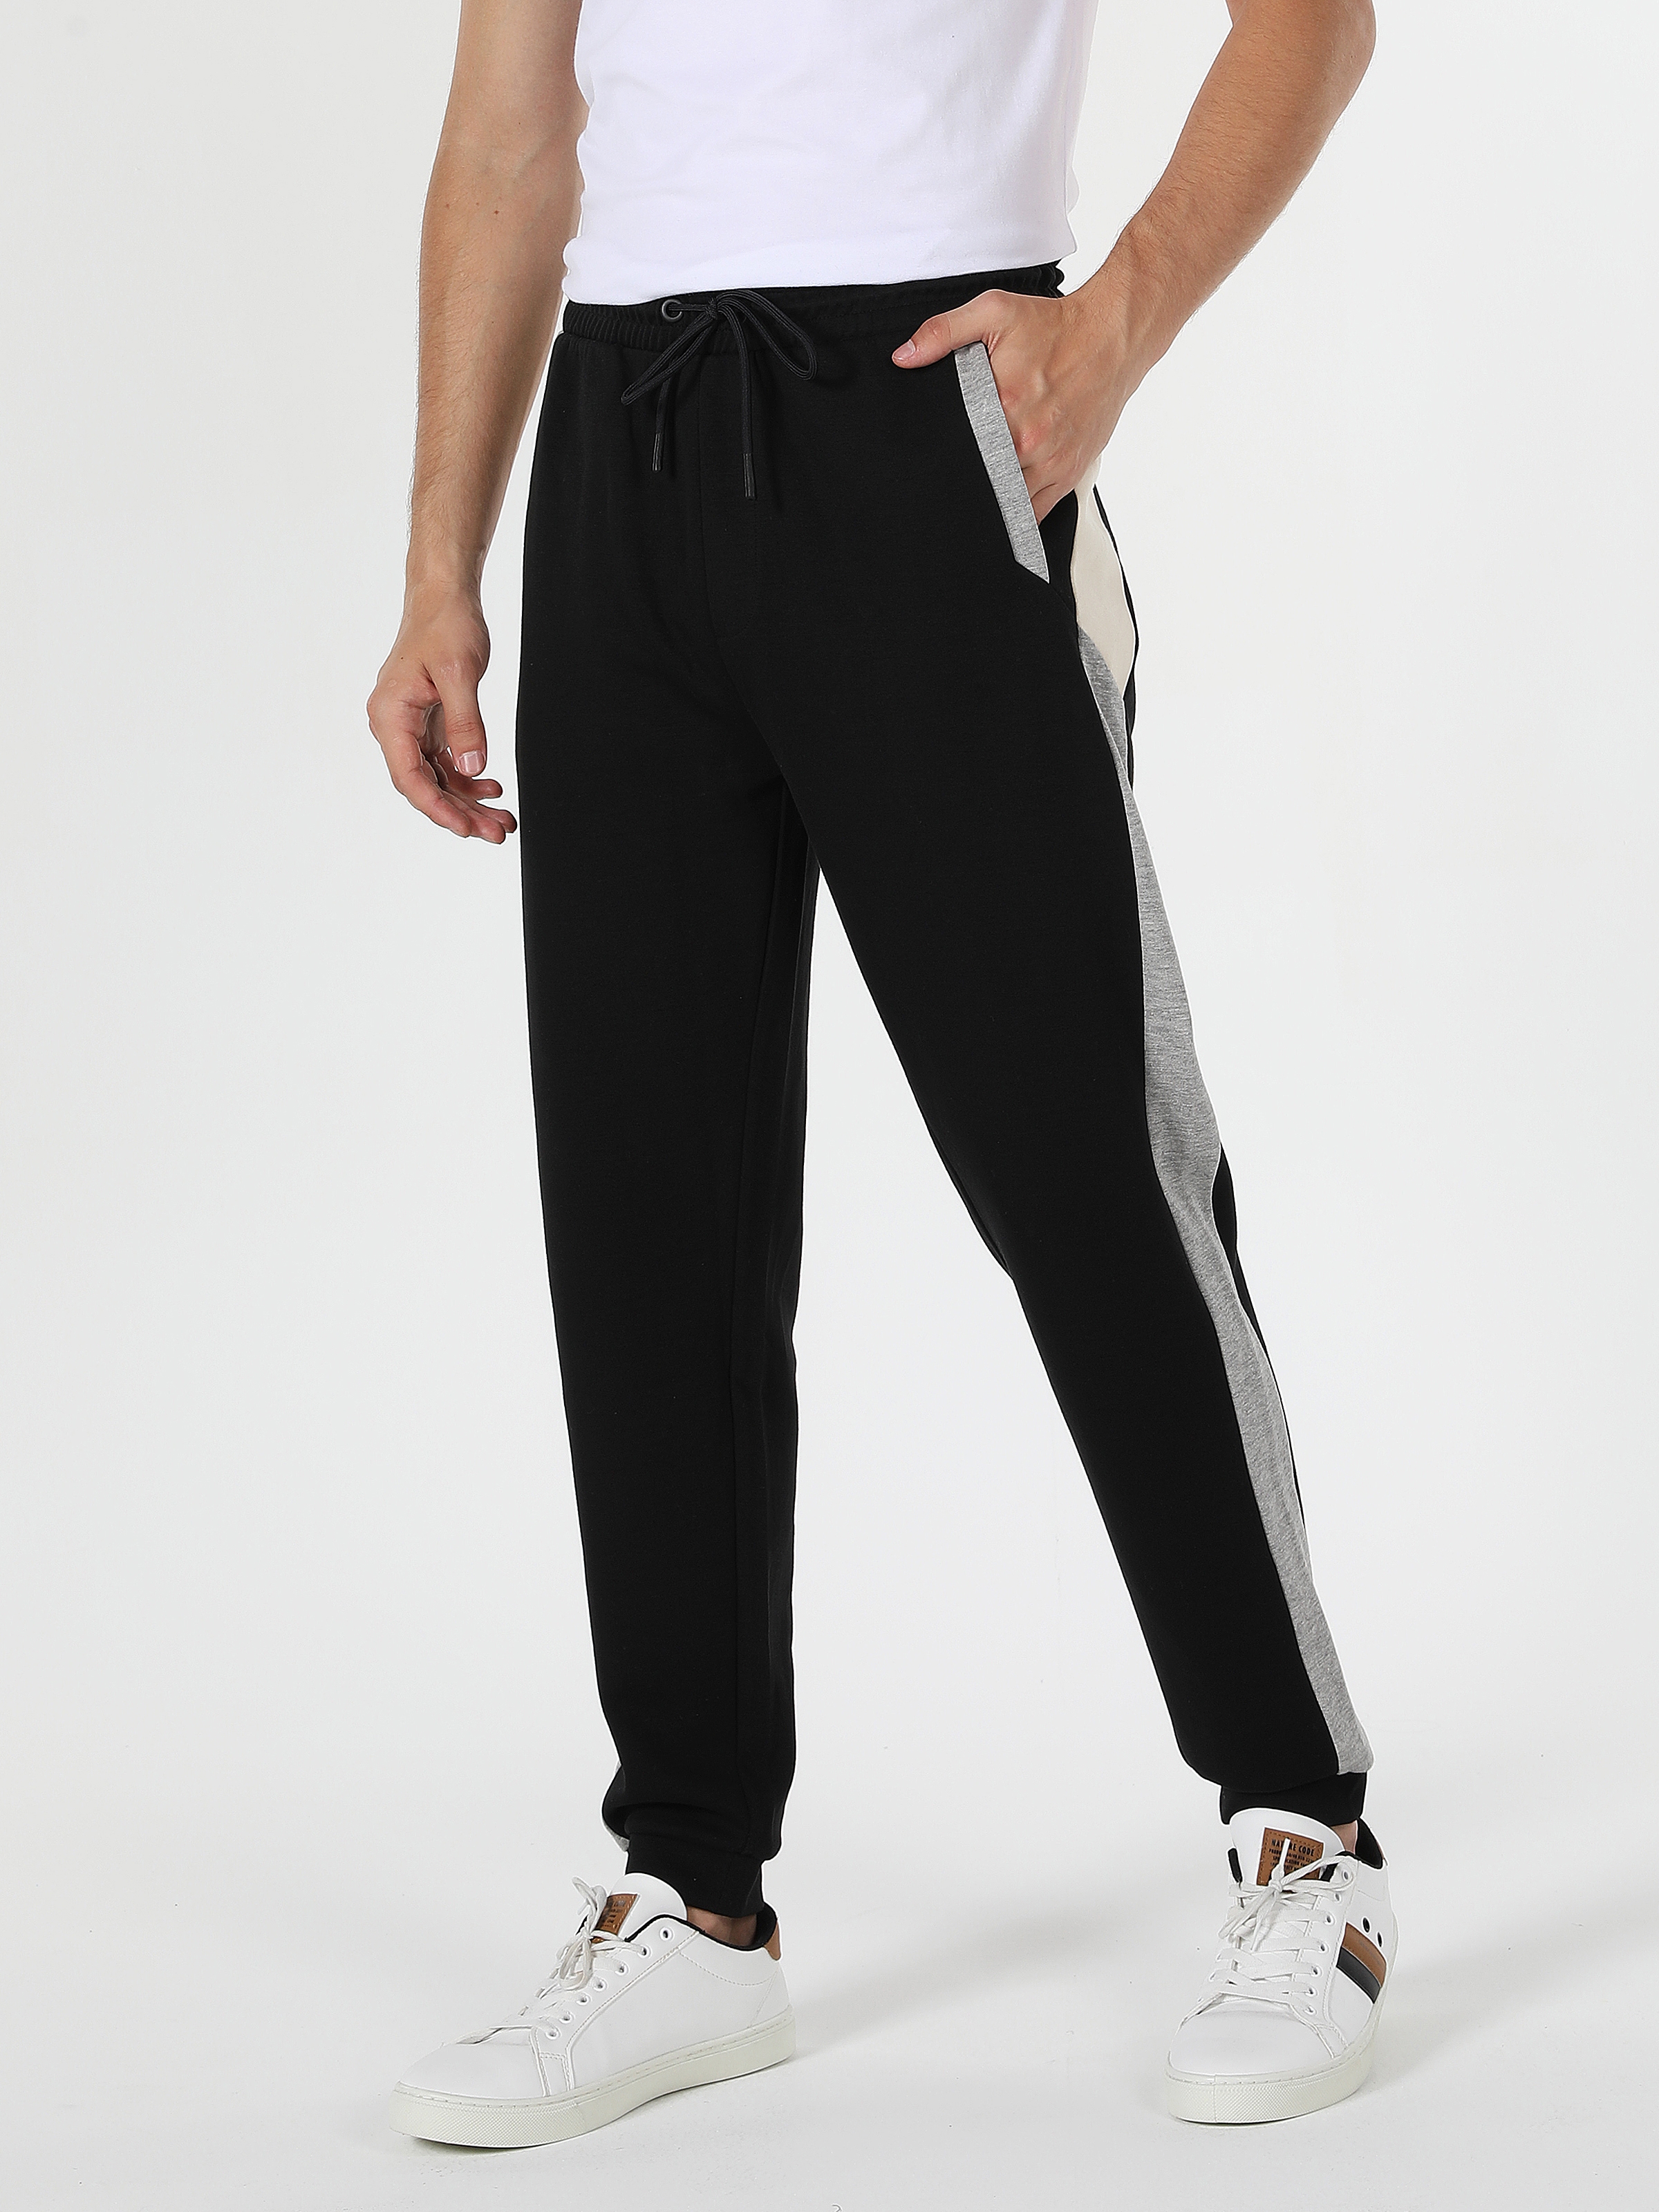 Afficher les détails de Pantalon De Survêtement Noir Pour Hommes, Coupe Slim, Taille Moyenne